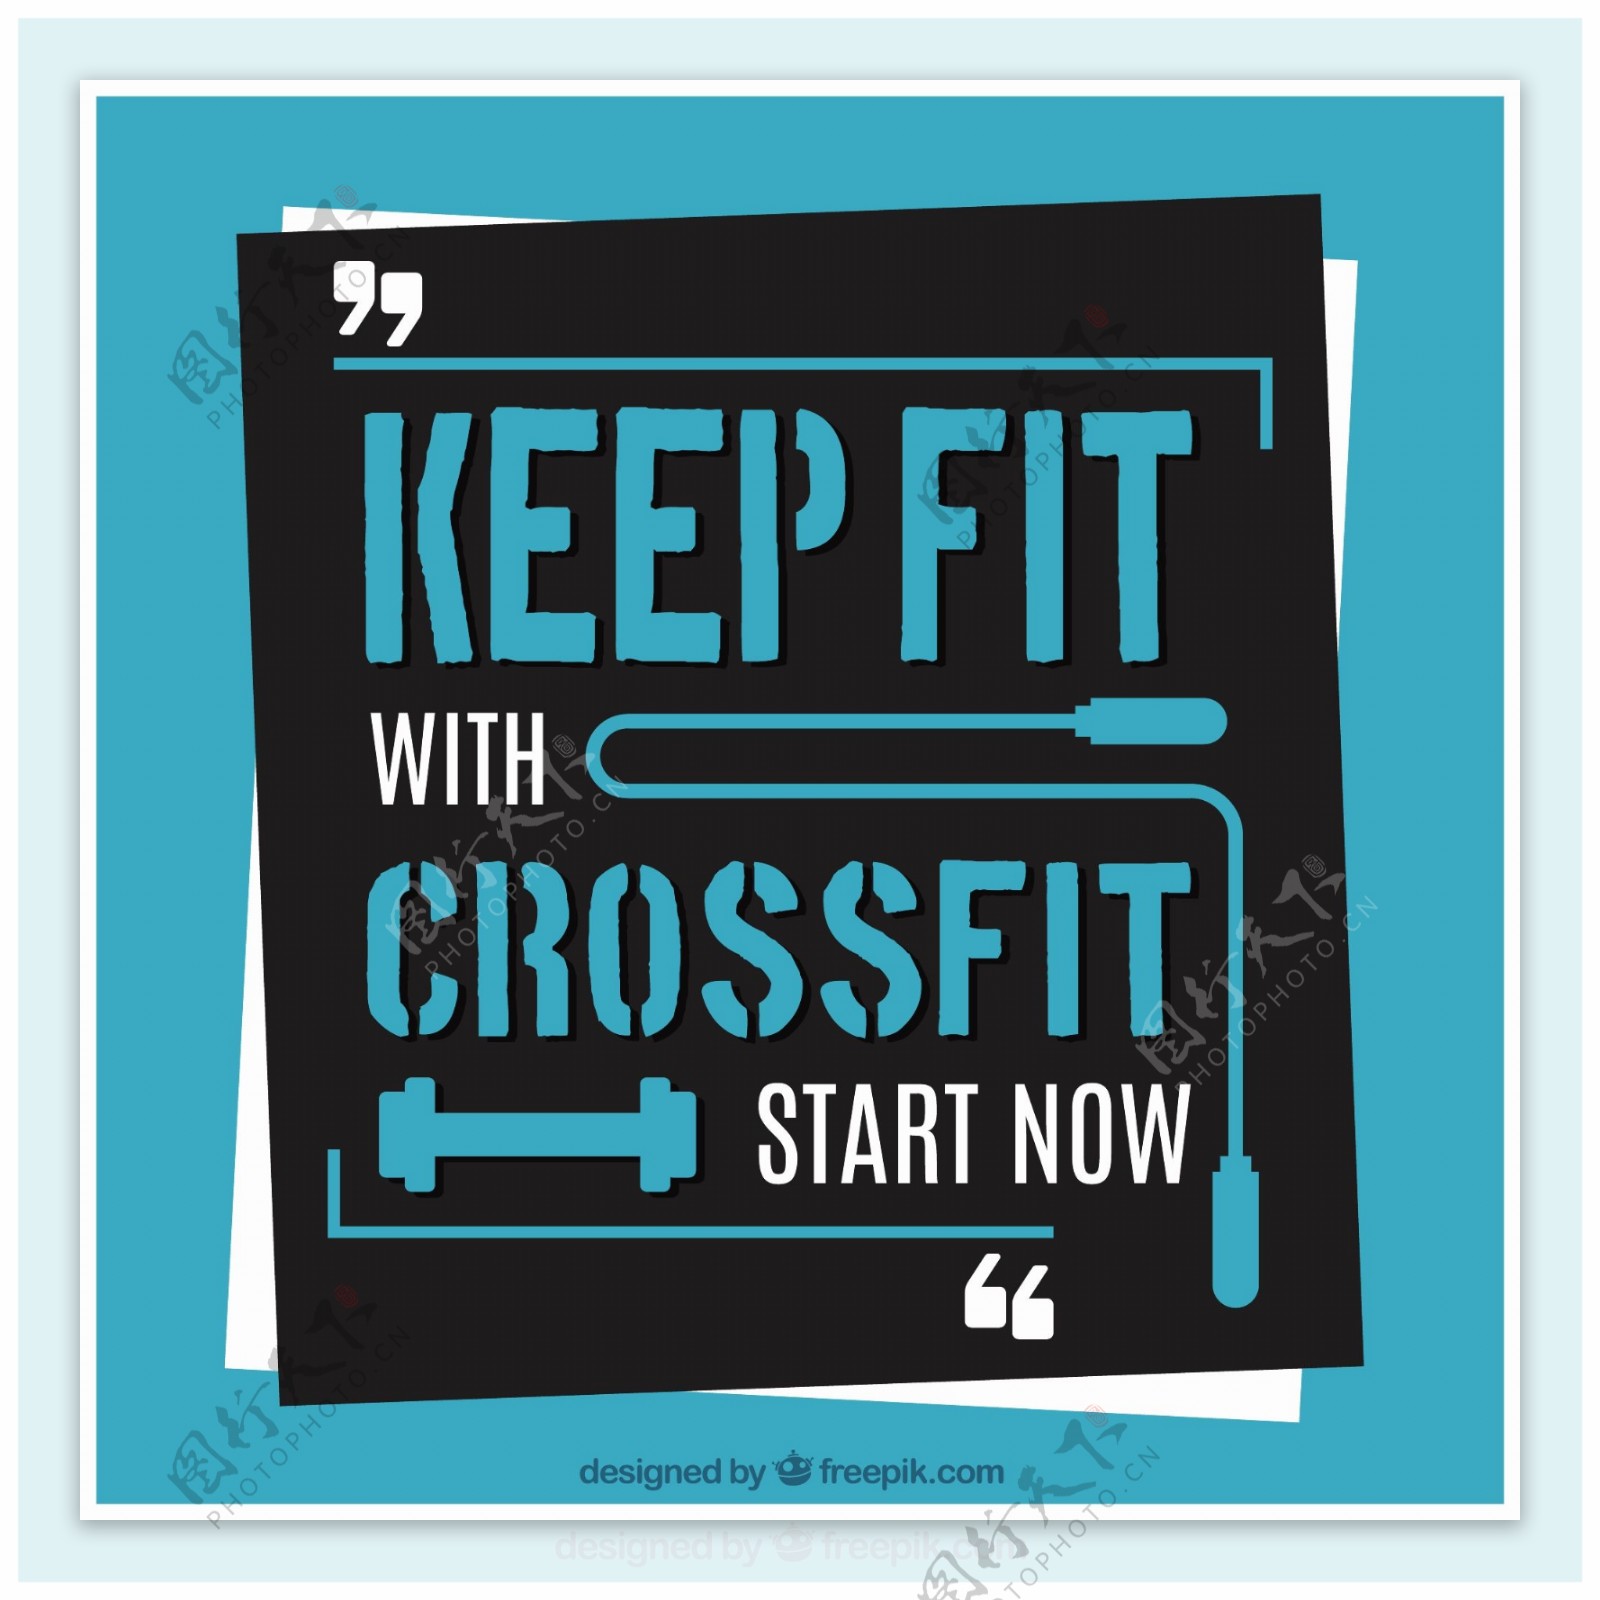 CrossFit的背景开始报价